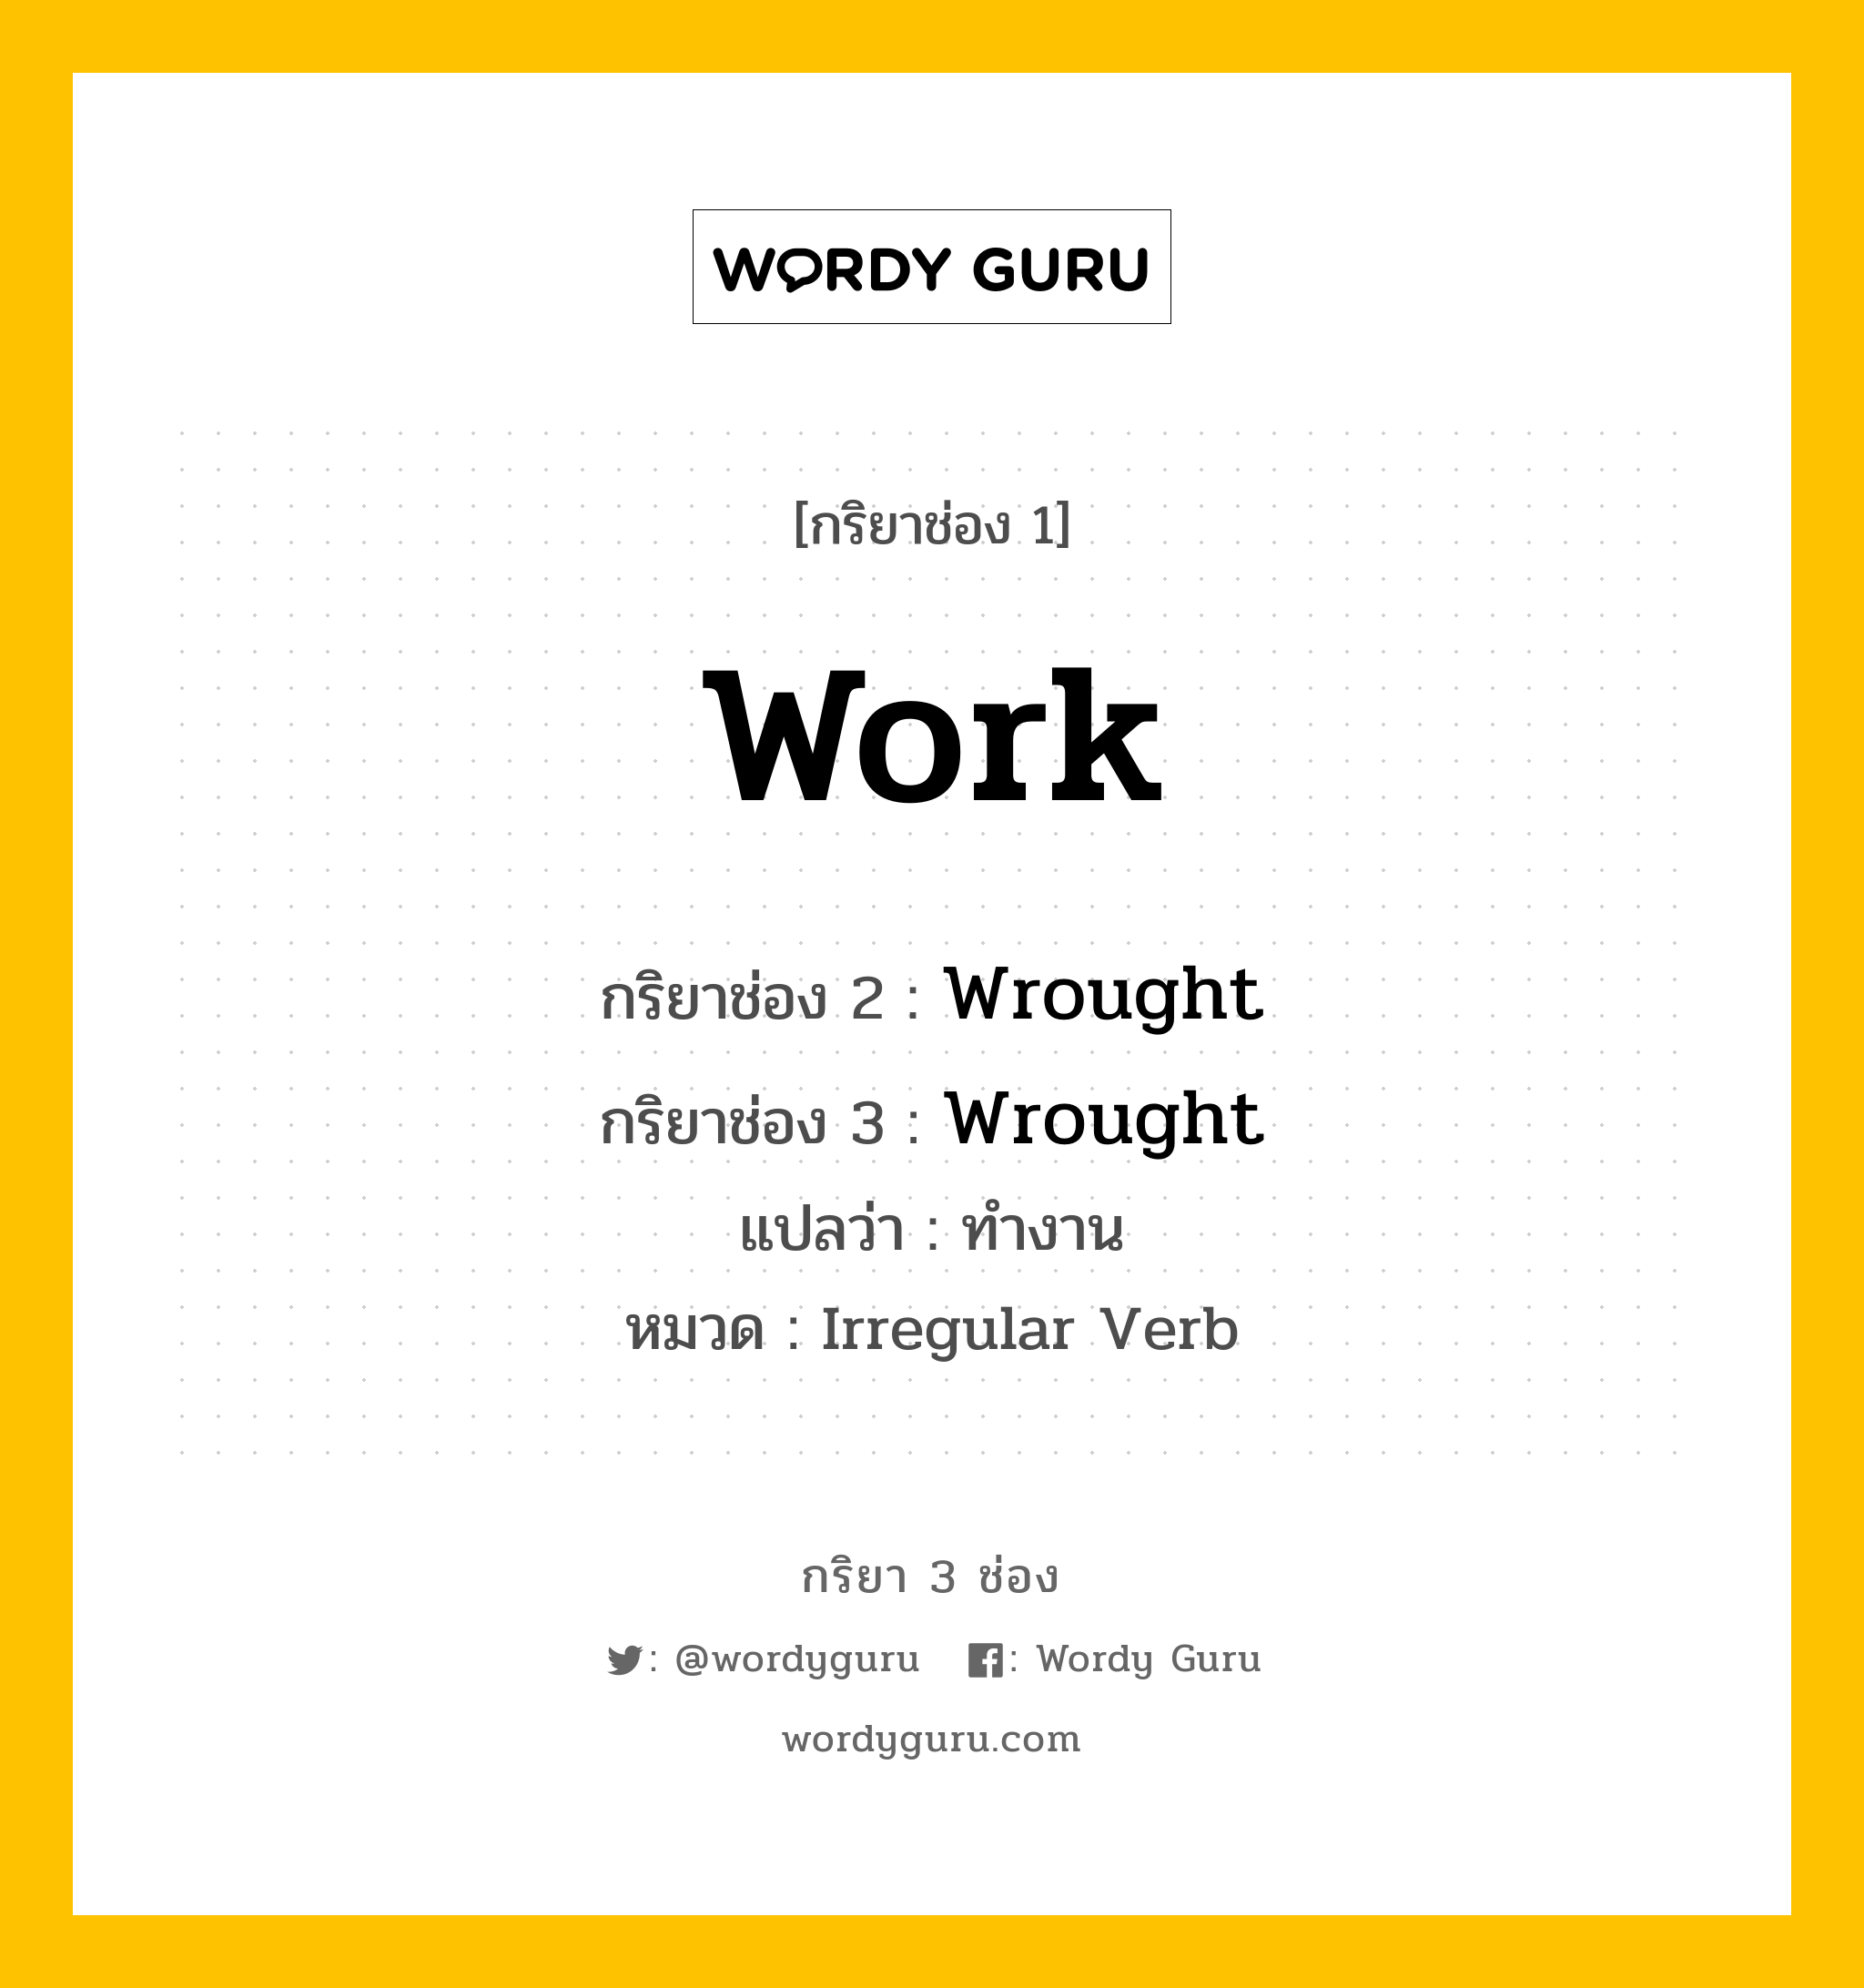 กริยา 3 ช่อง: Work ช่อง 2 Work ช่อง 3 คืออะไร, กริยาช่อง 1 Work กริยาช่อง 2 Wrought กริยาช่อง 3 Wrought แปลว่า ทำงาน หมวด Irregular Verb มีหลายแบบ y หมวด Irregular Verb